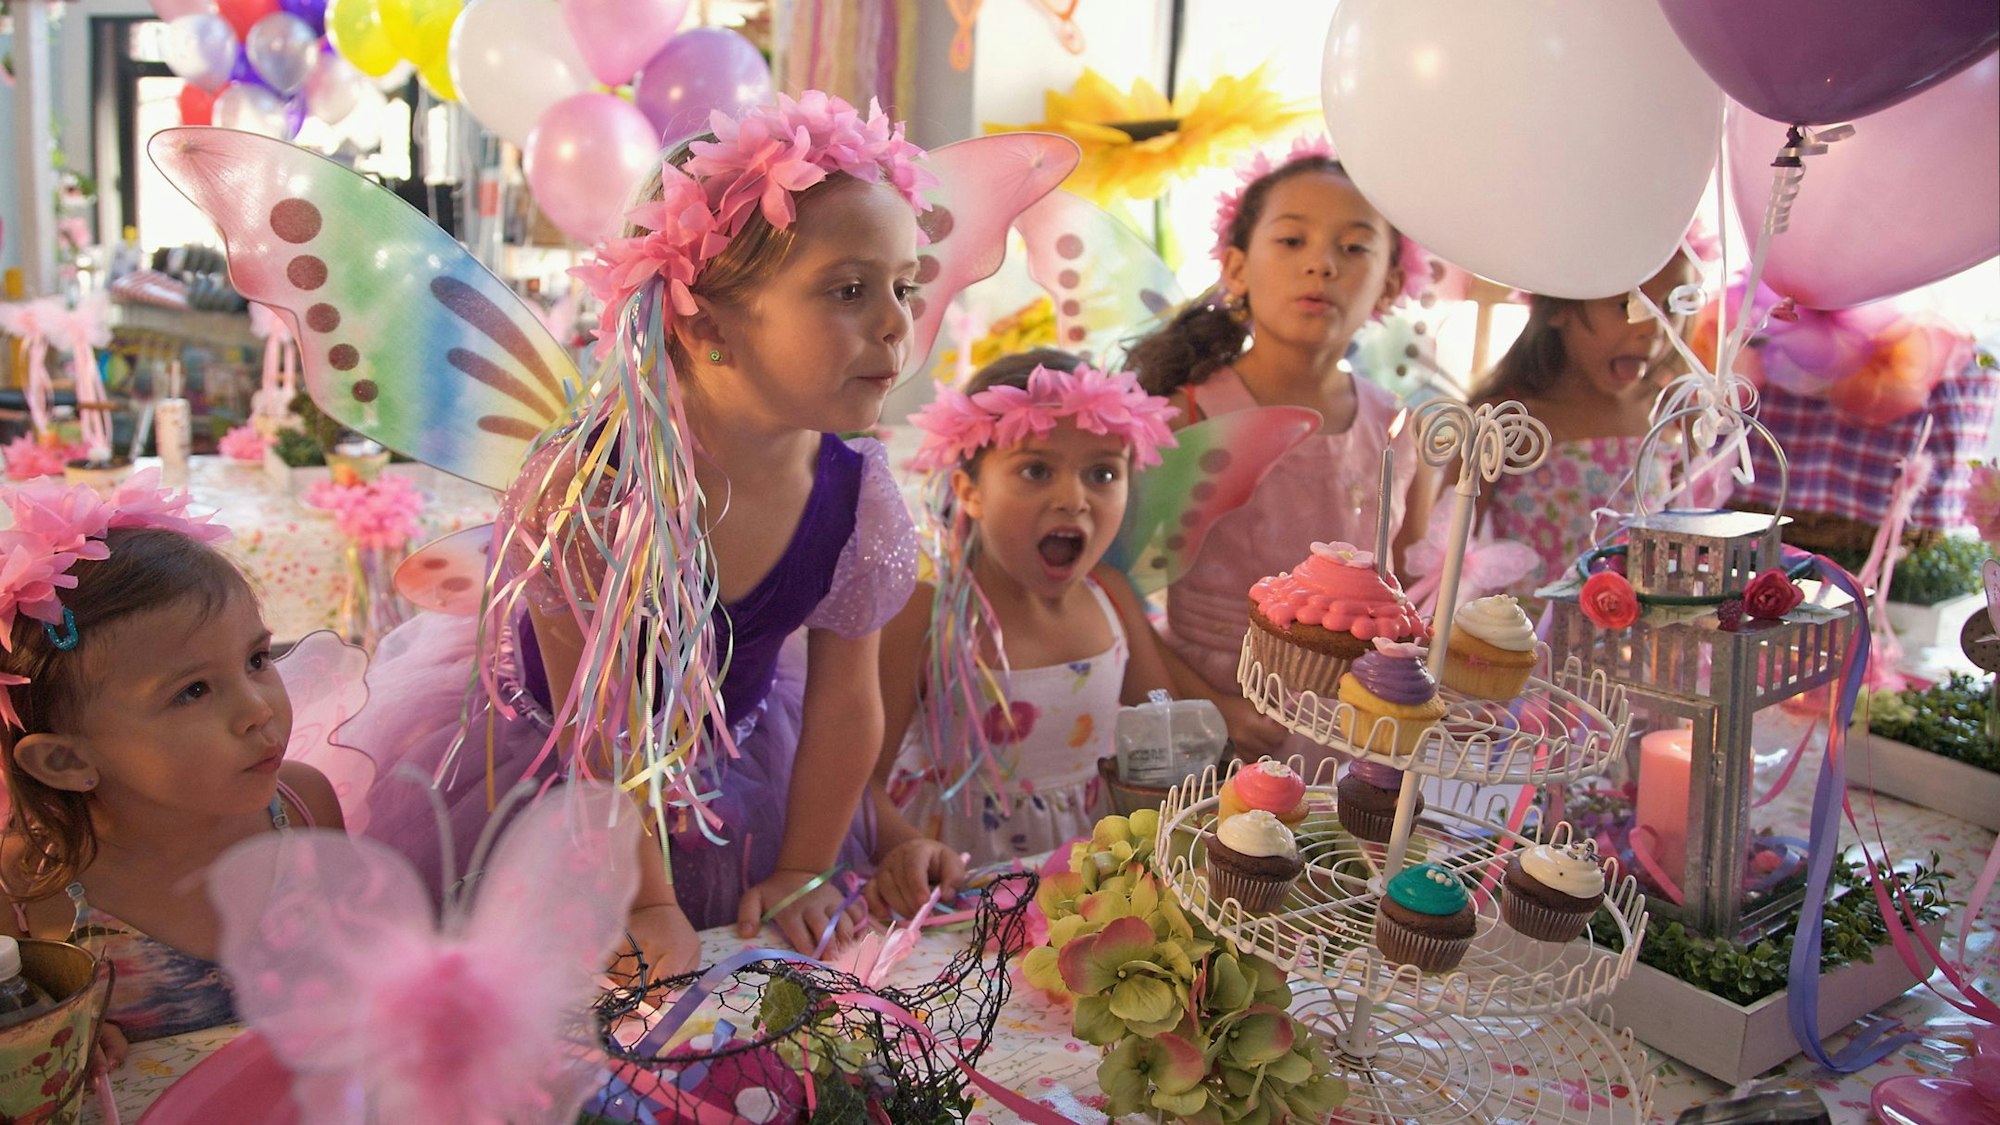 Ein Mädchen im lila Kleid mit Blumenkranz feiert mit ihren Freundinnen Geburtstag.